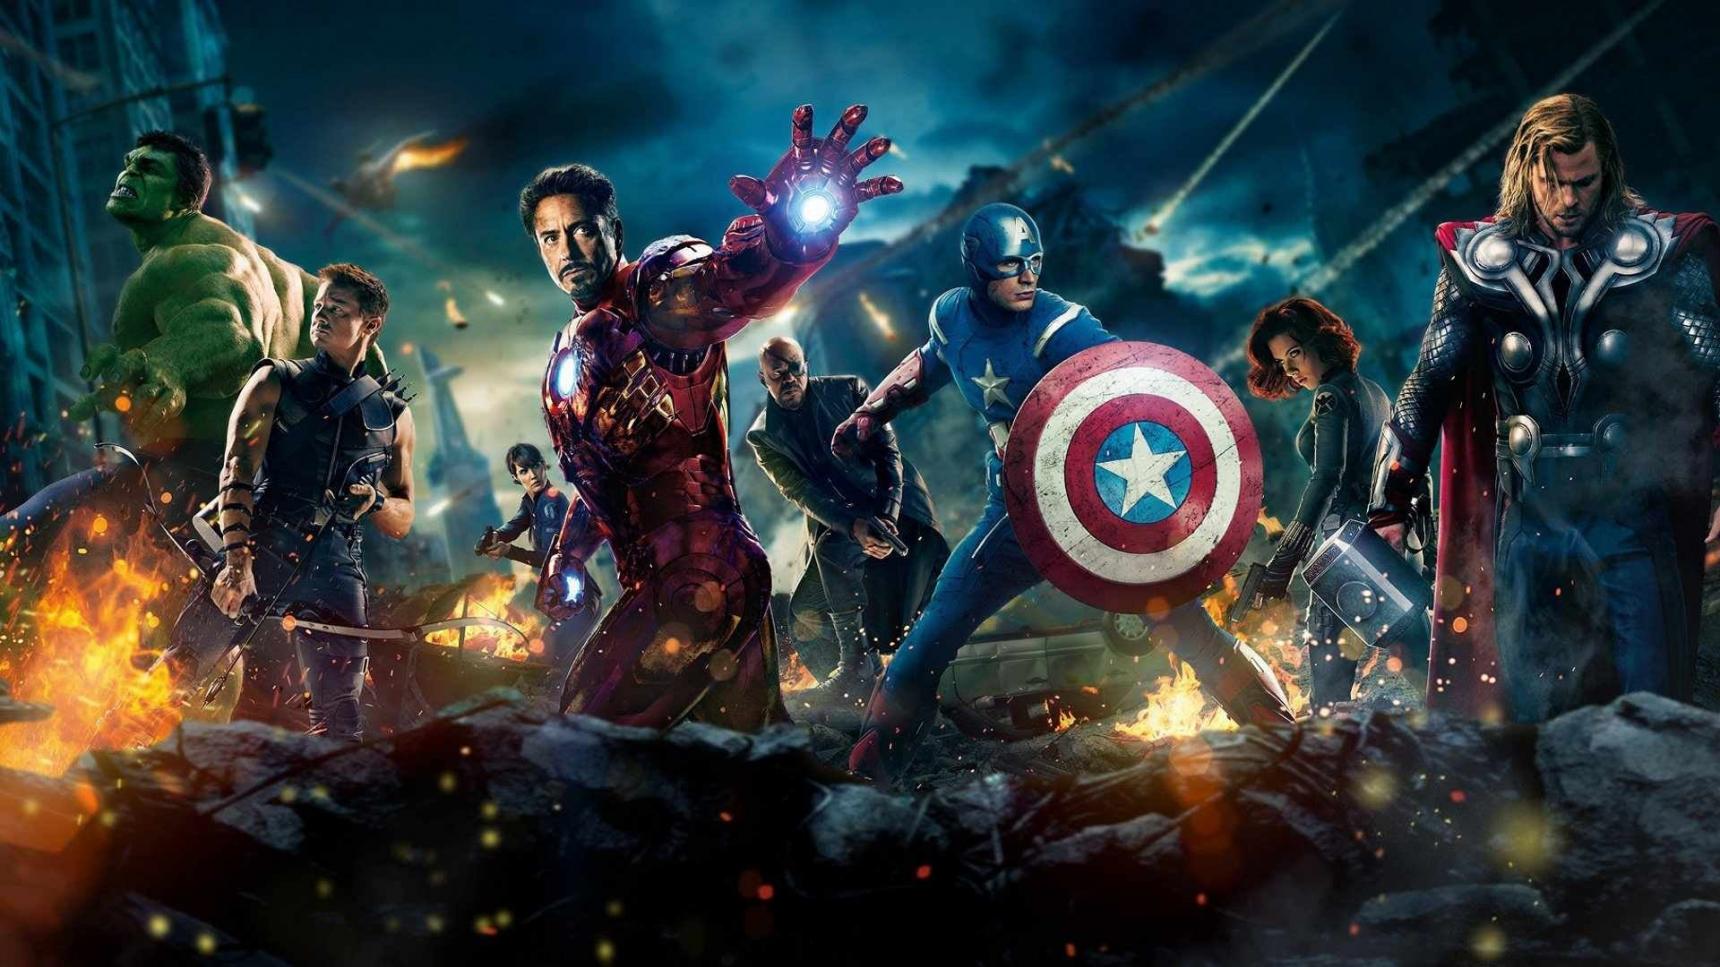 Fondo de pantalla de la película The Avengers (Los vengadores) en Cuevana 3 gratis